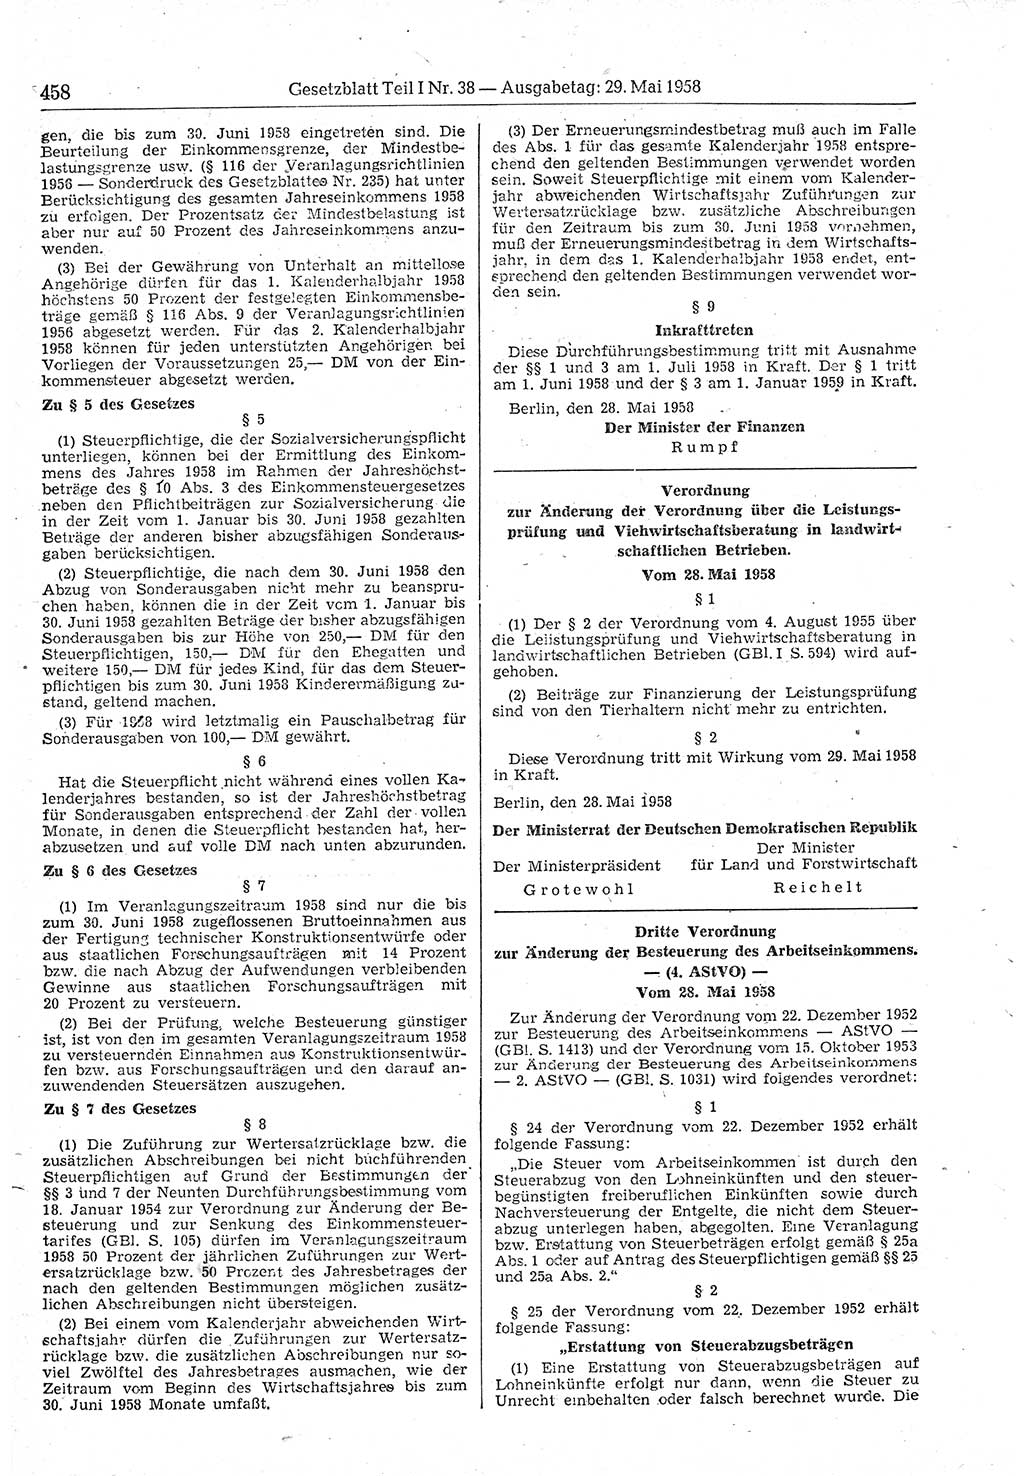 Gesetzblatt (GBl.) der Deutschen Demokratischen Republik (DDR) Teil Ⅰ 1958, Seite 458 (GBl. DDR Ⅰ 1958, S. 458)